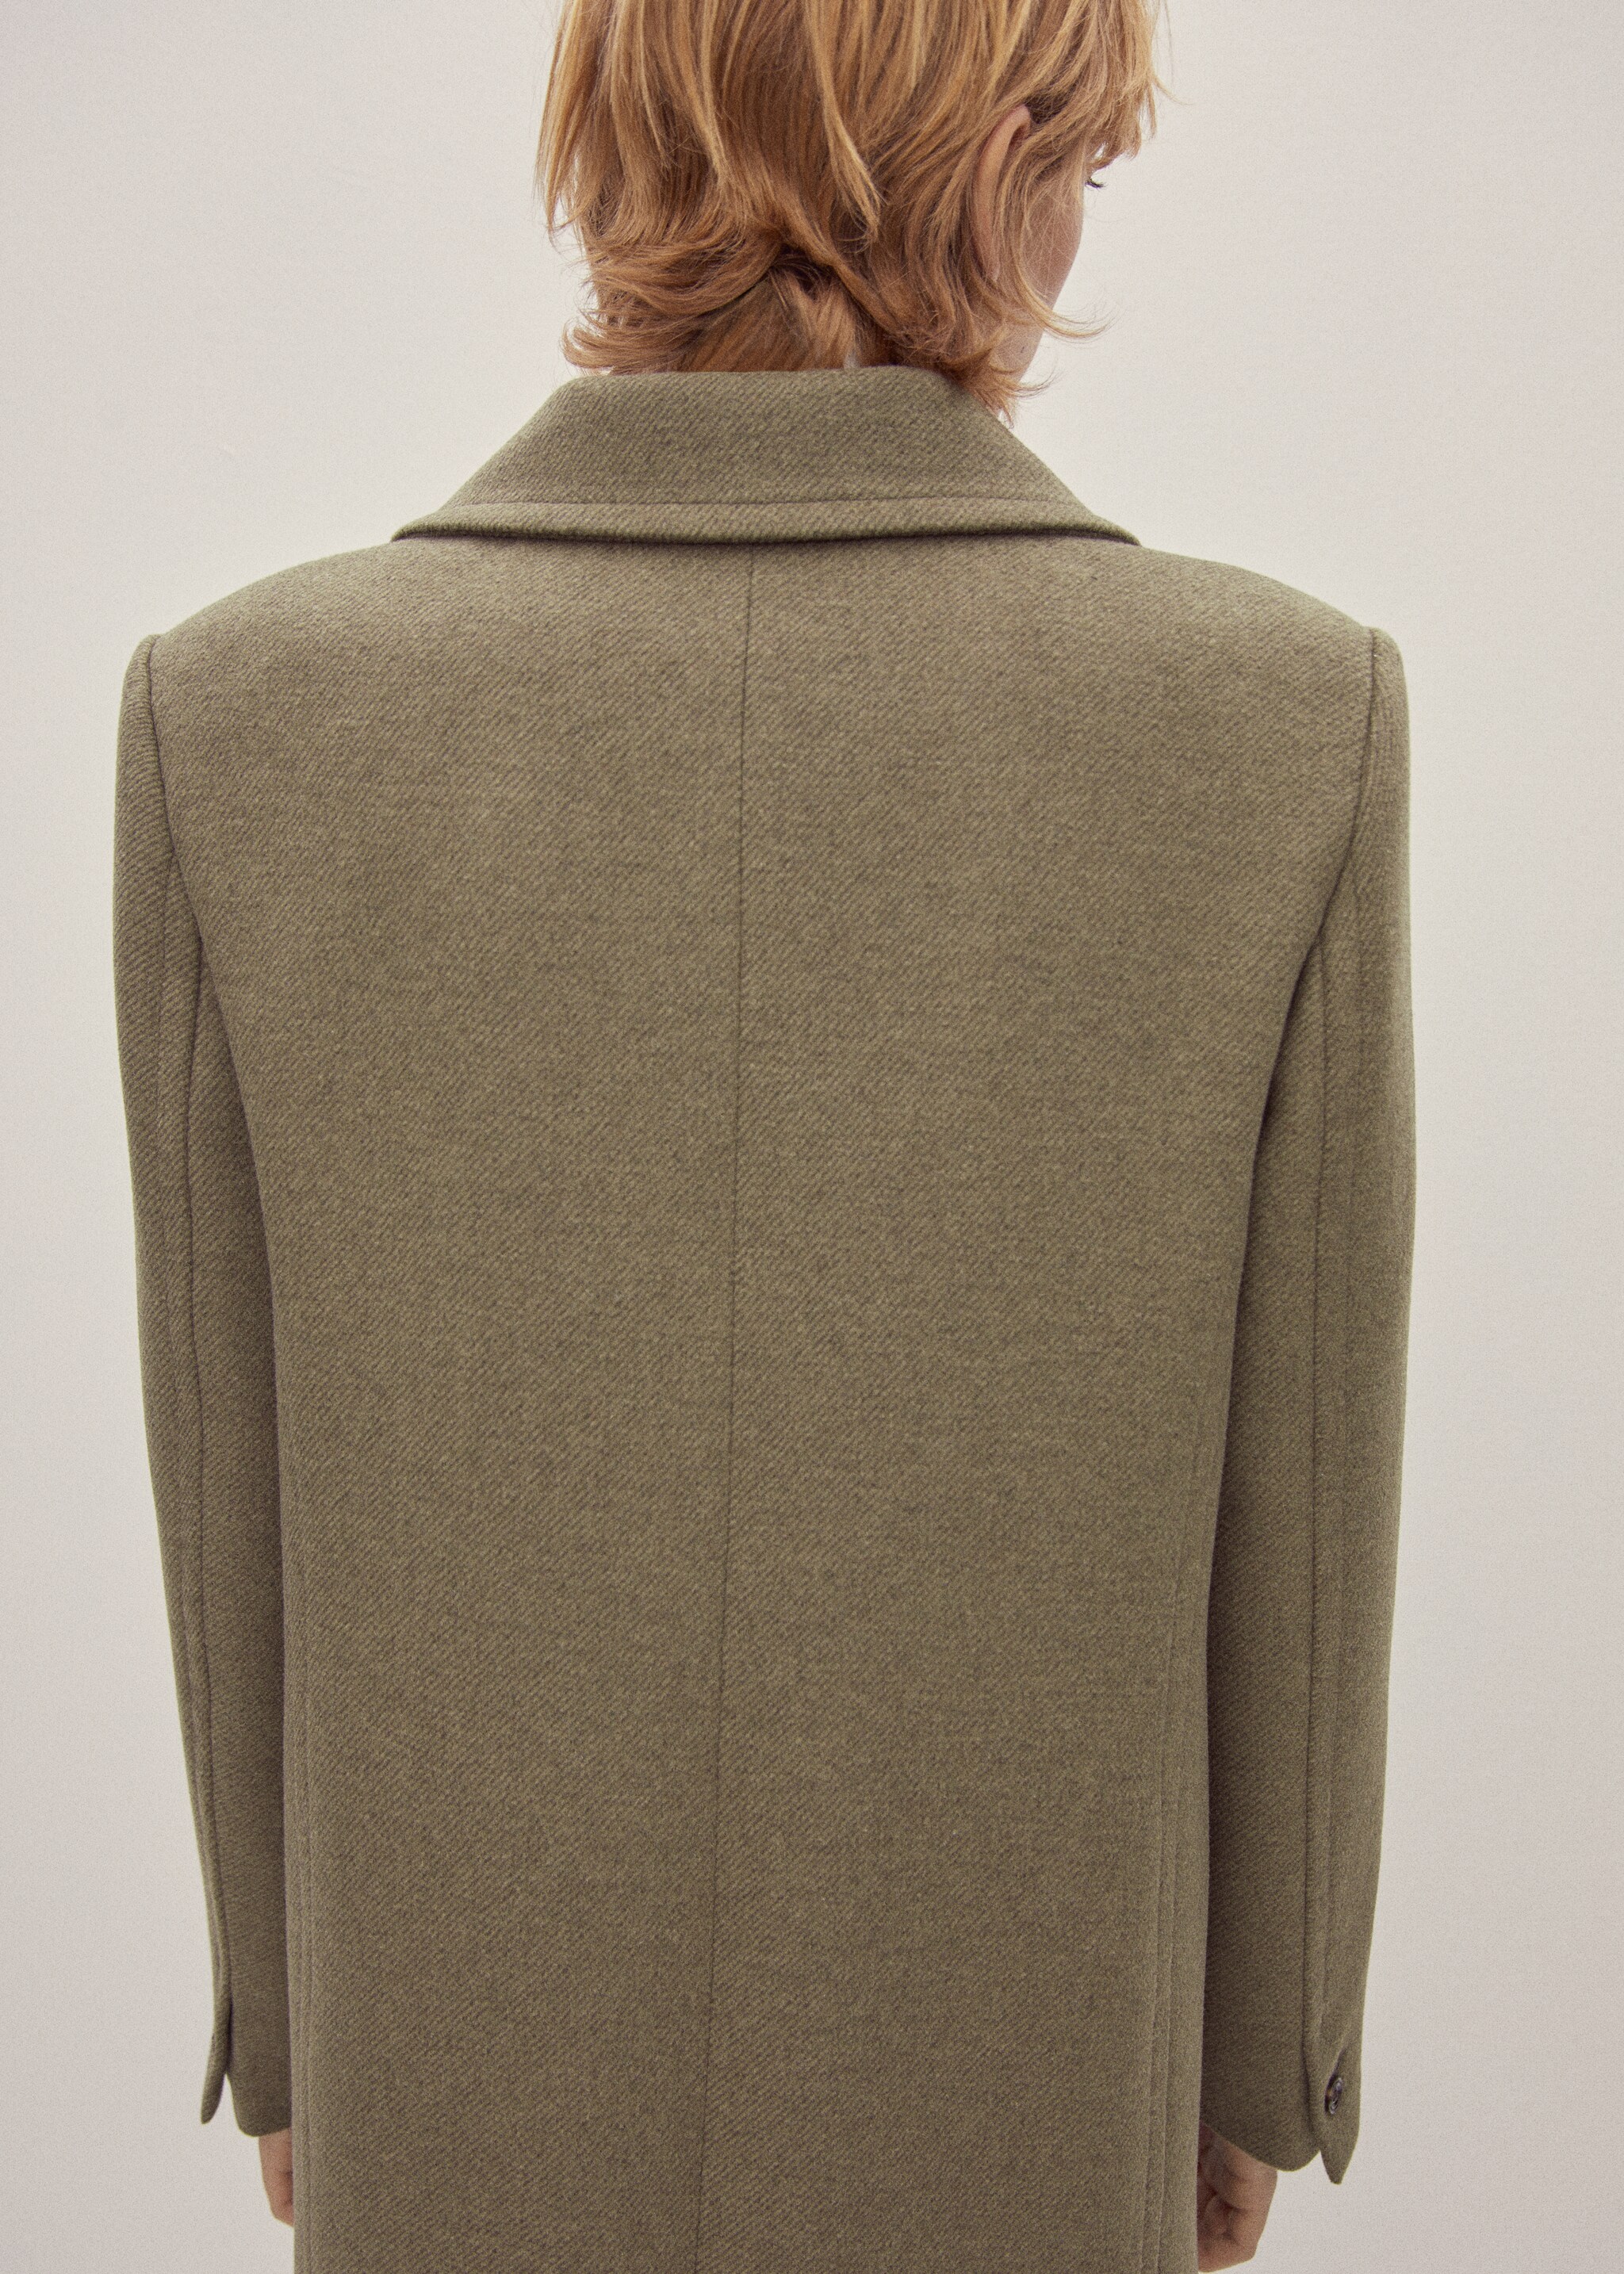 Пальто с лацканами шерсть - Деталь изделия 9